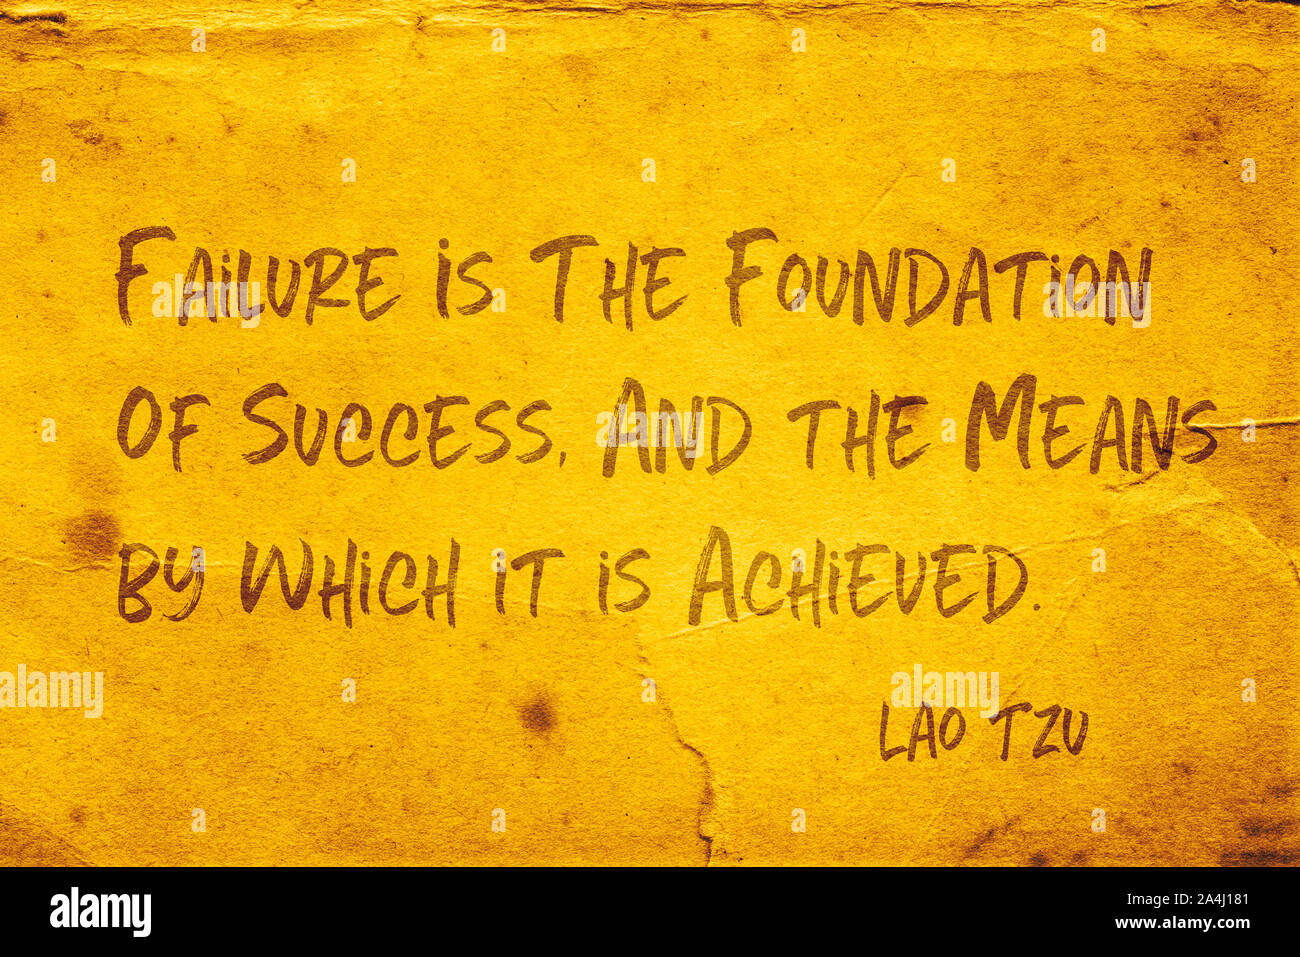 Scheitern ist die Basis für den Erfolg, und die Mittel, durch die es erreicht wird - alte chinesische Philosoph Lao Tzu Angebot auf grunge gelbes Papier gedruckt Stockfoto